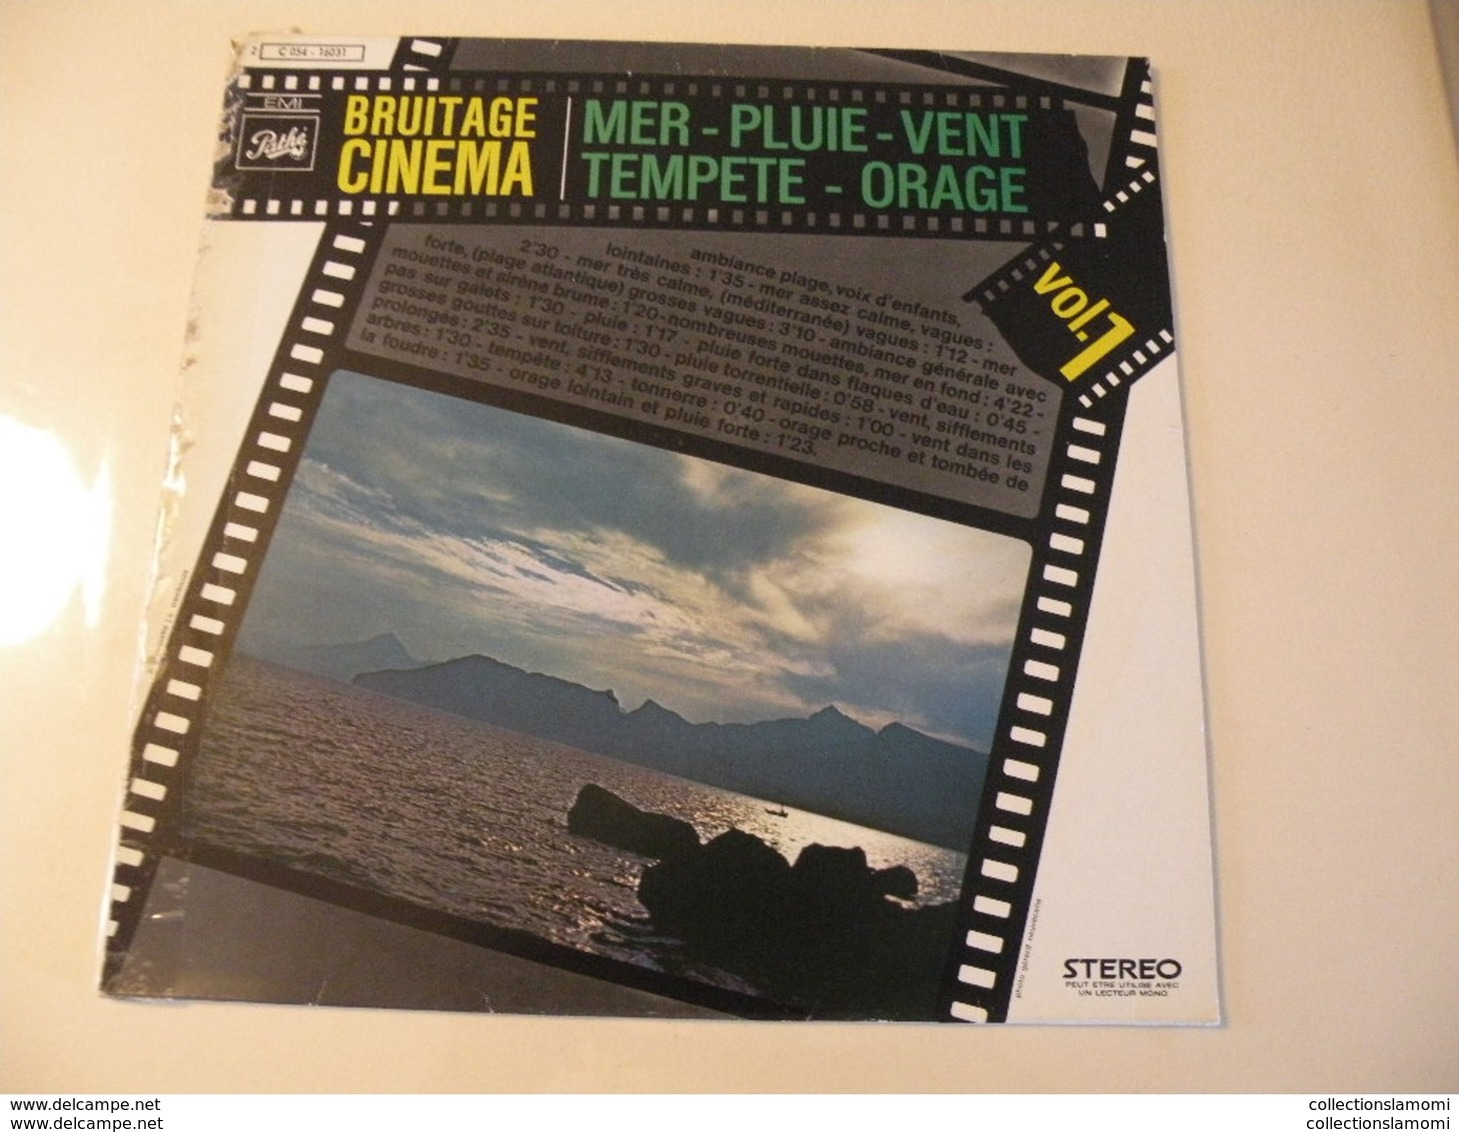 Bruitage Cinéma - Mer-Pluie-Vent-Tempête-Orage - (Titres Sur Photos) - Vinyle 33 T LP - Soundtracks, Film Music